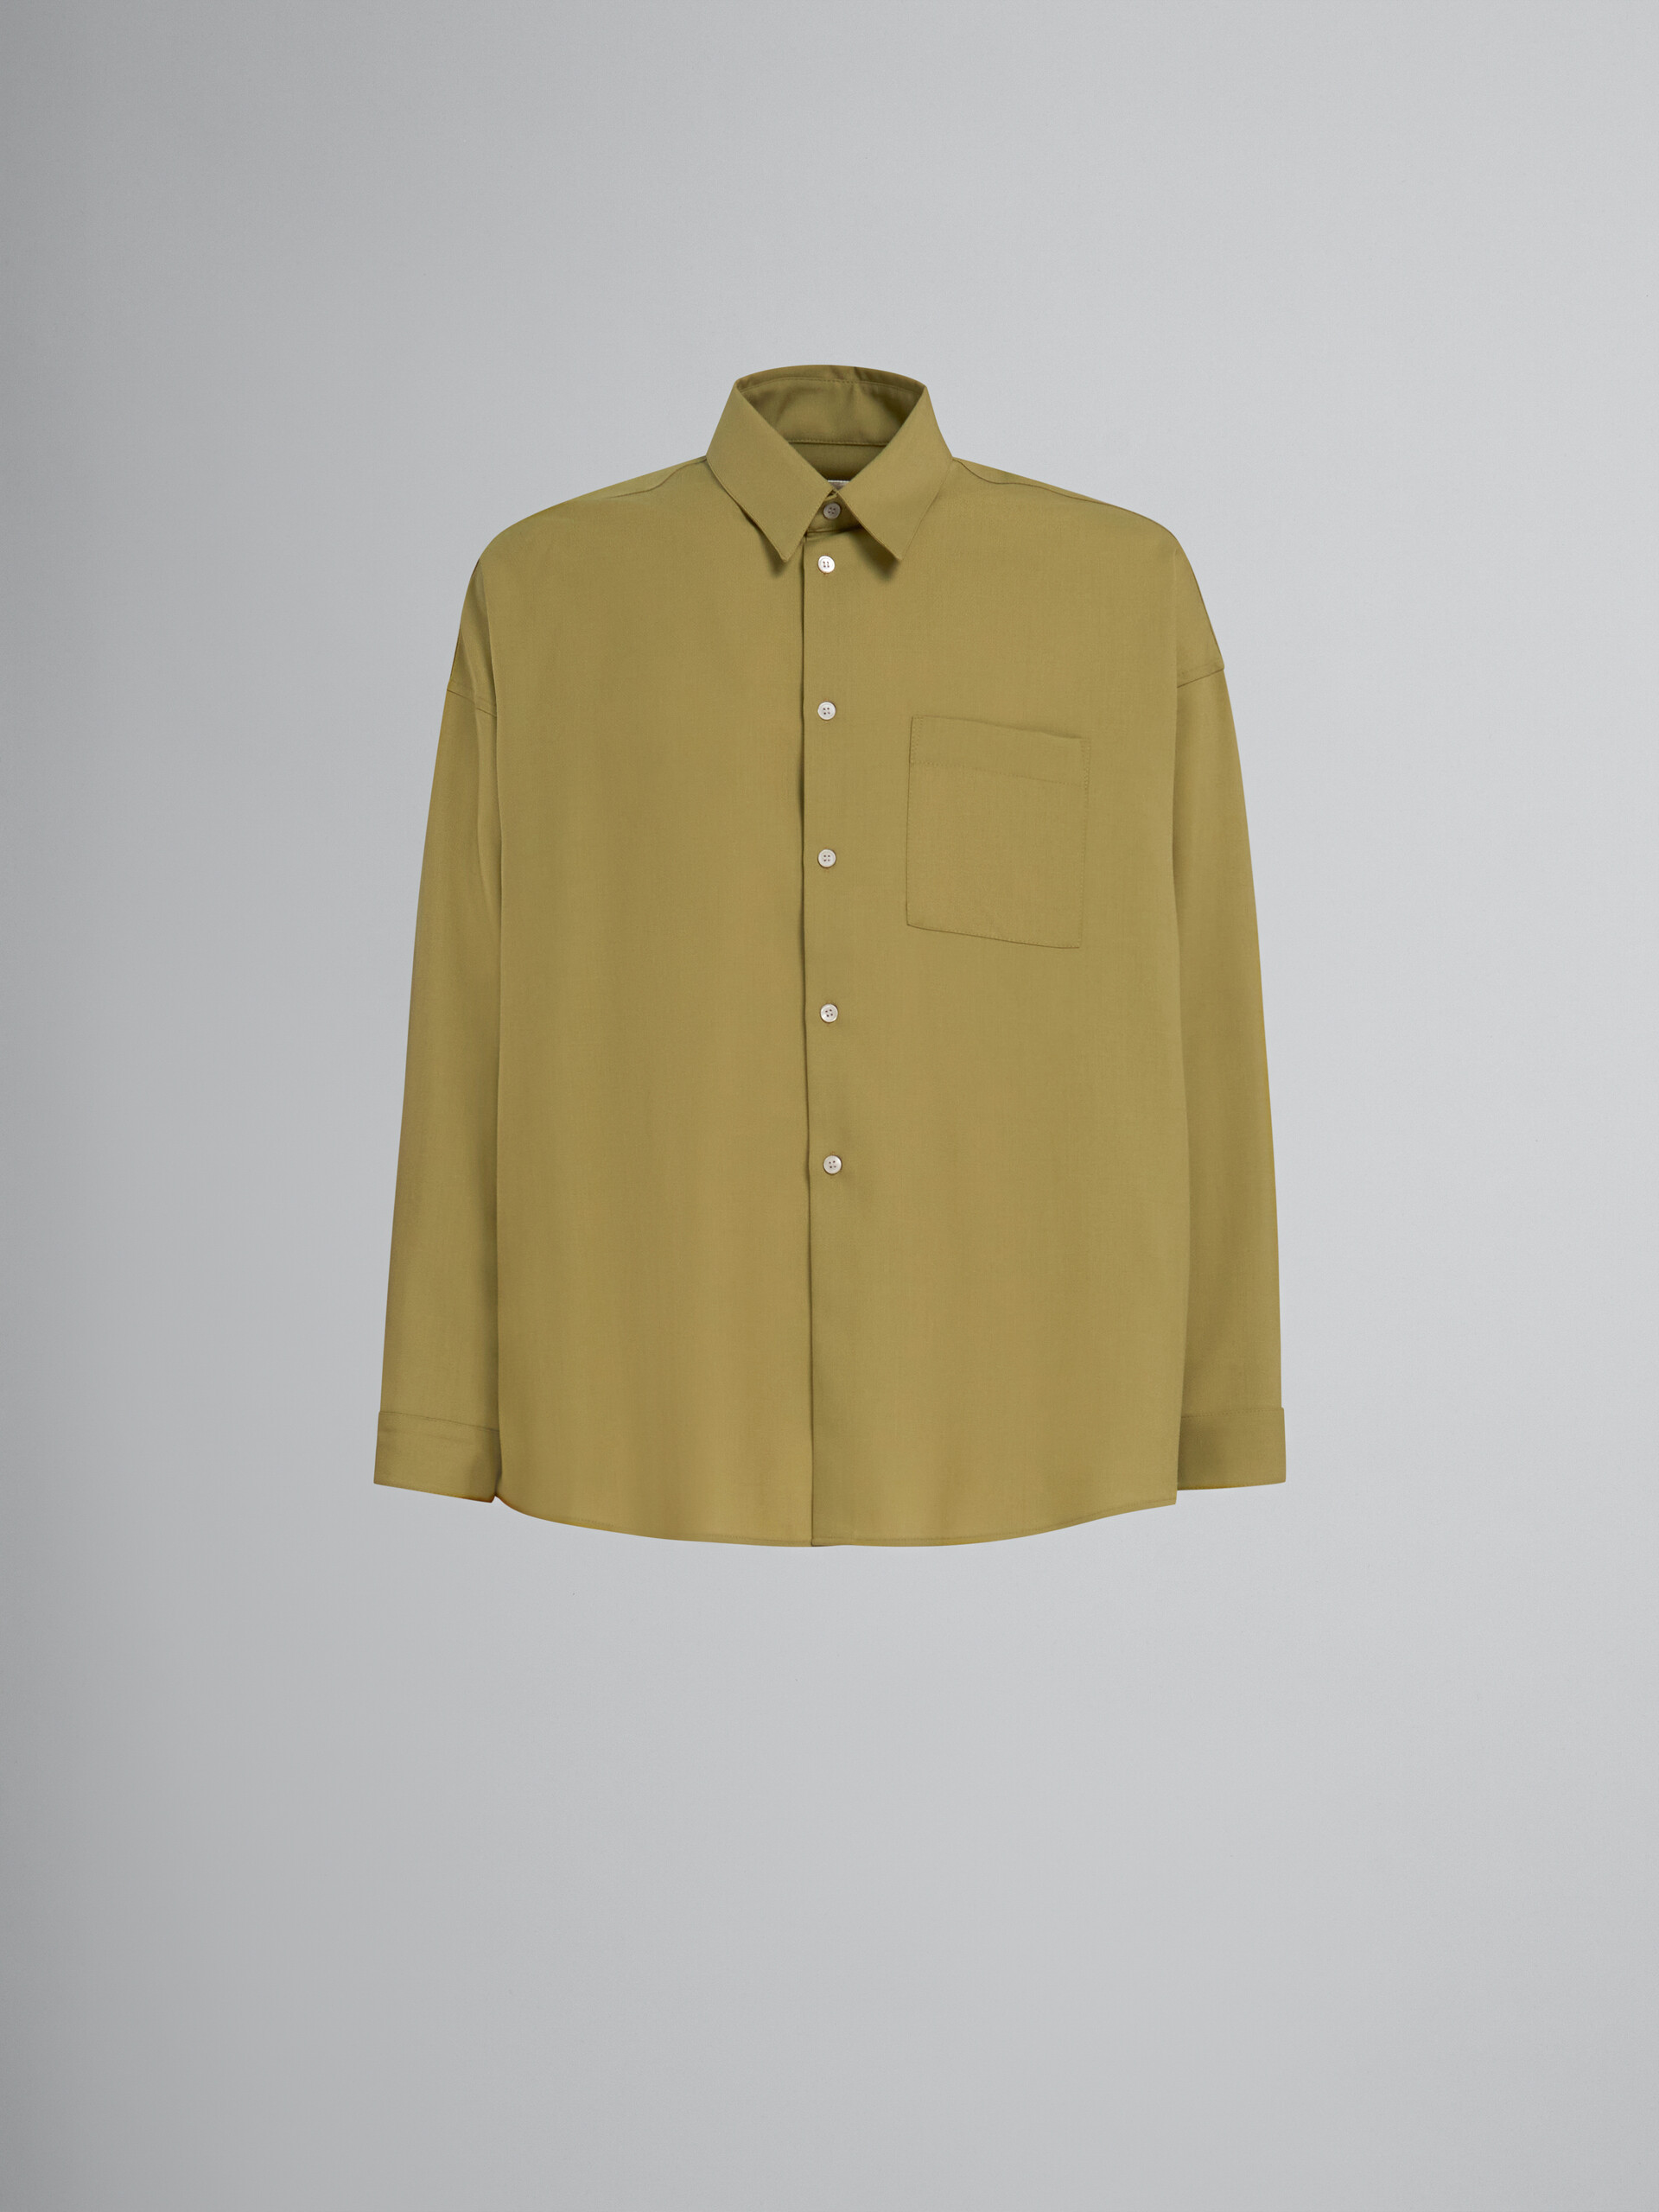 Dunkelblaues langärmeliges Hemd aus Tropenwolle - Hemden - Image 1